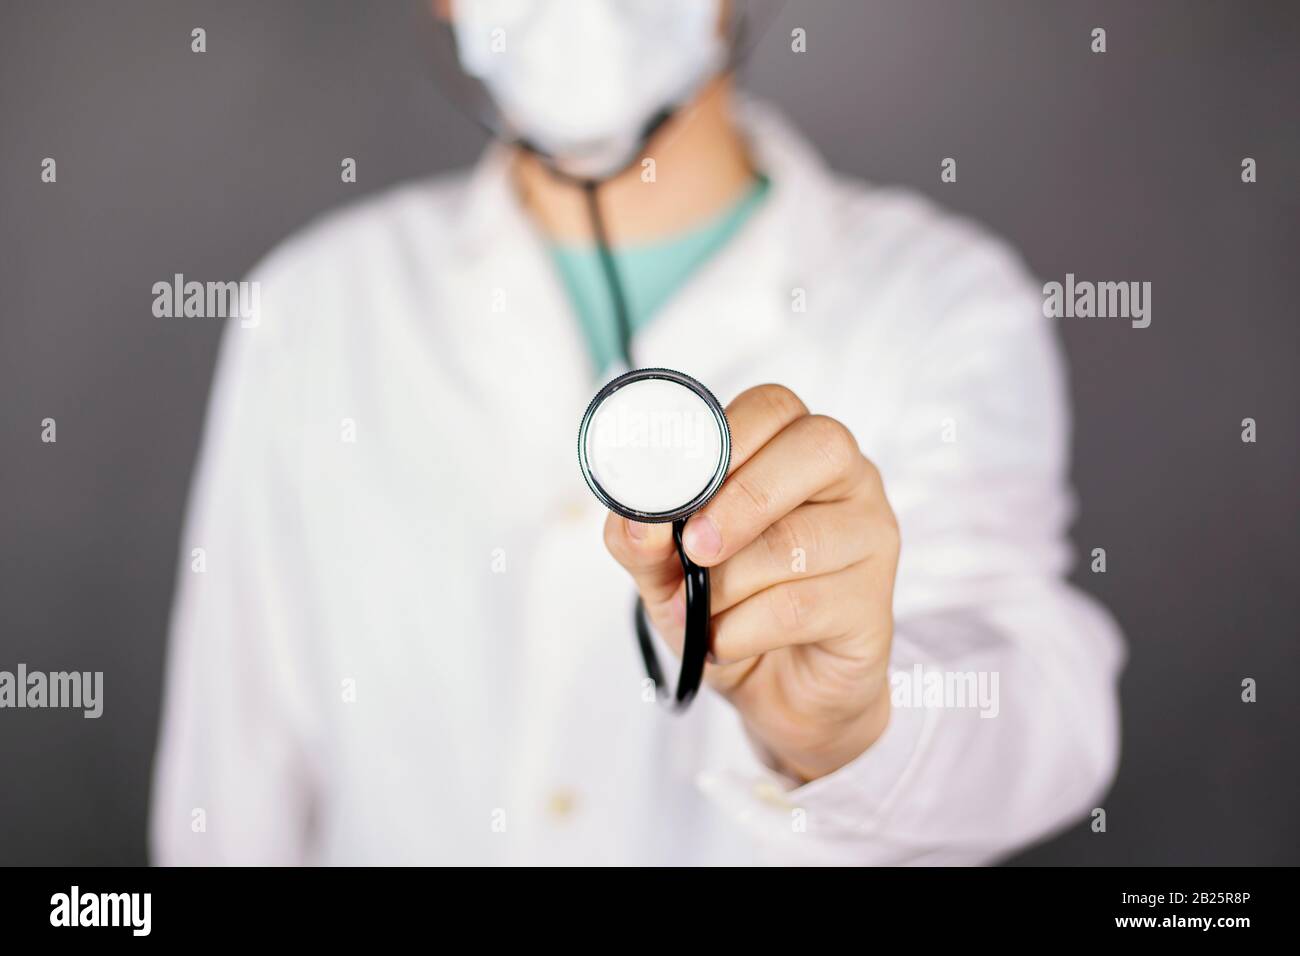 medico in un abito medico bianco con una maschera usa e getta e uno statoscopo nelle sue mani in piedi su uno sfondo scuro. Foto Stock